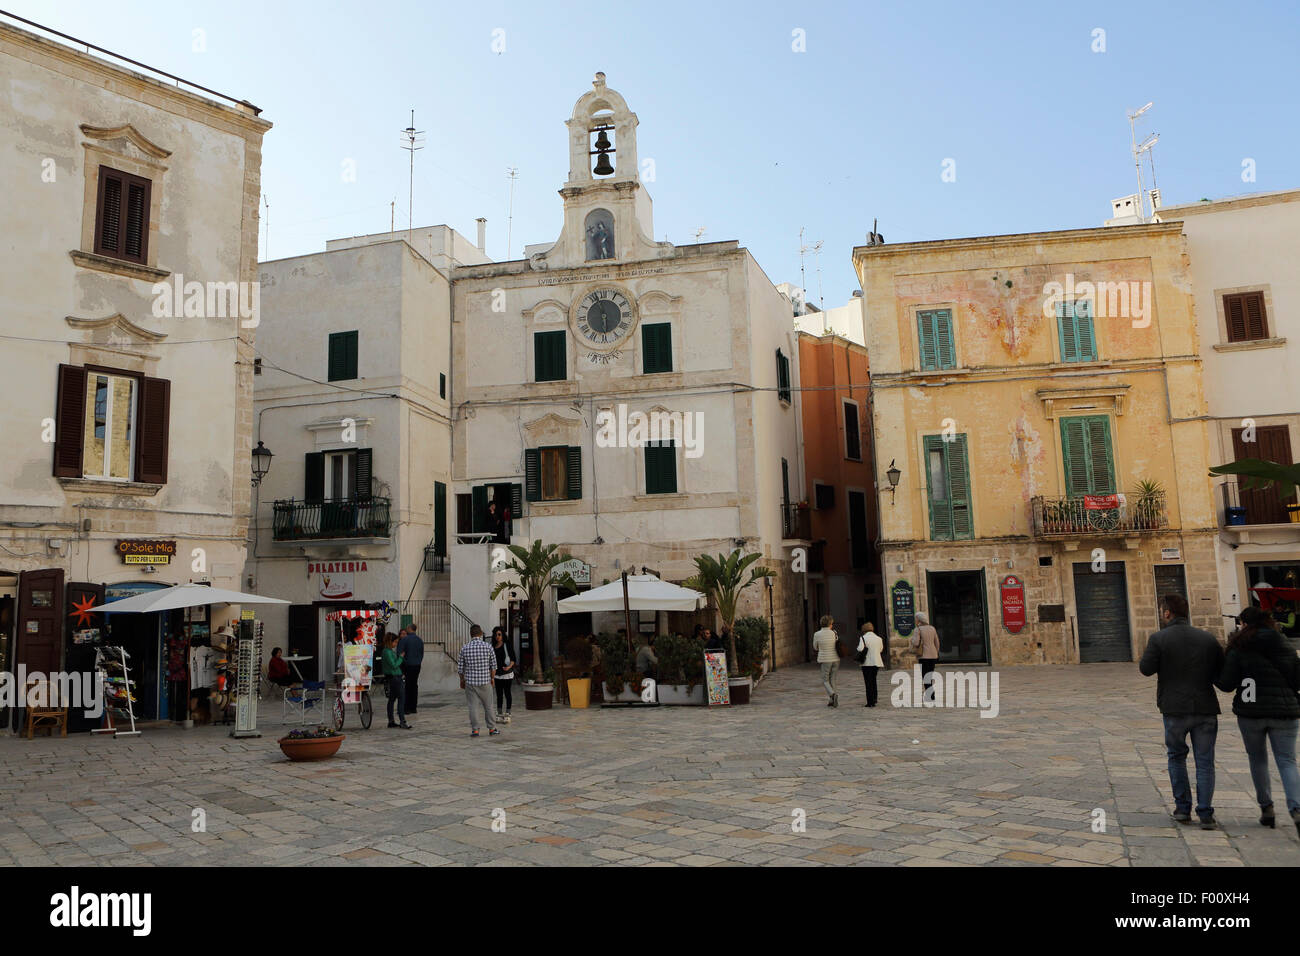 Tiendas, cafés y el campanario de una iglesia matriarcal (Chiesa Matrice) en Polignano a Mare en Apulia, Italia. Foto de stock